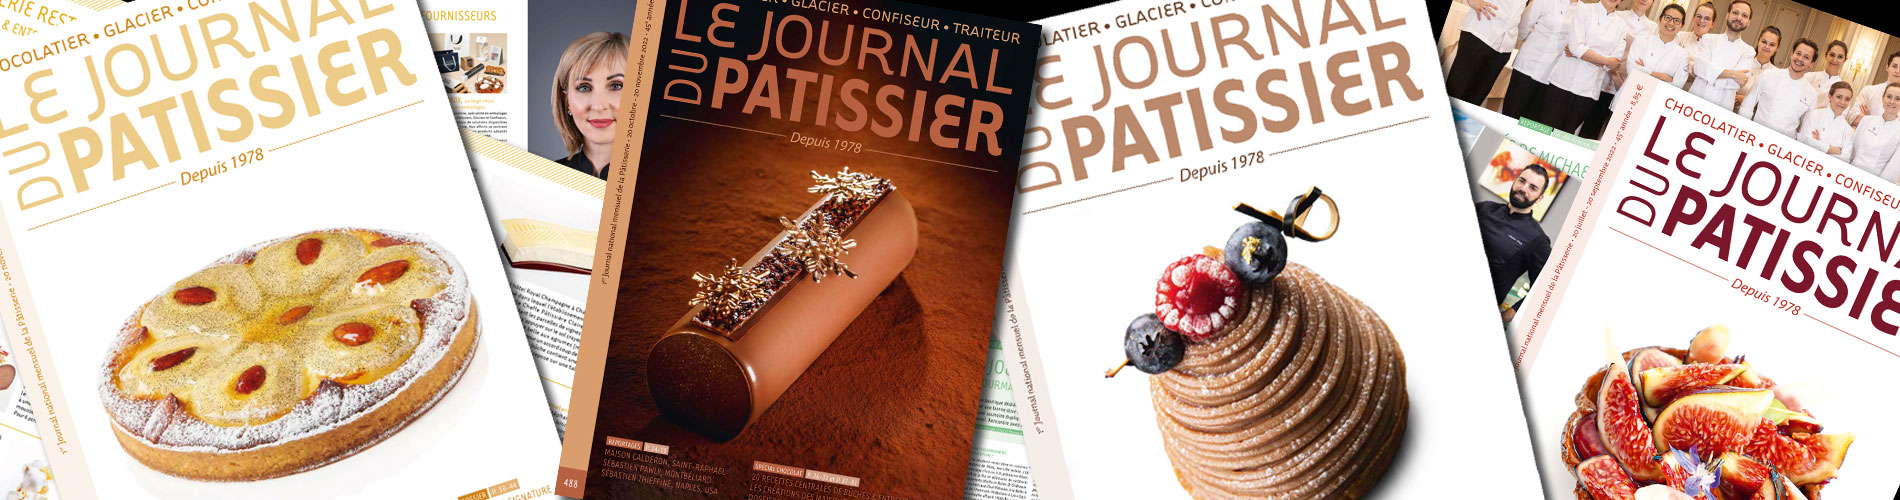 header Presse Journal du Patissier